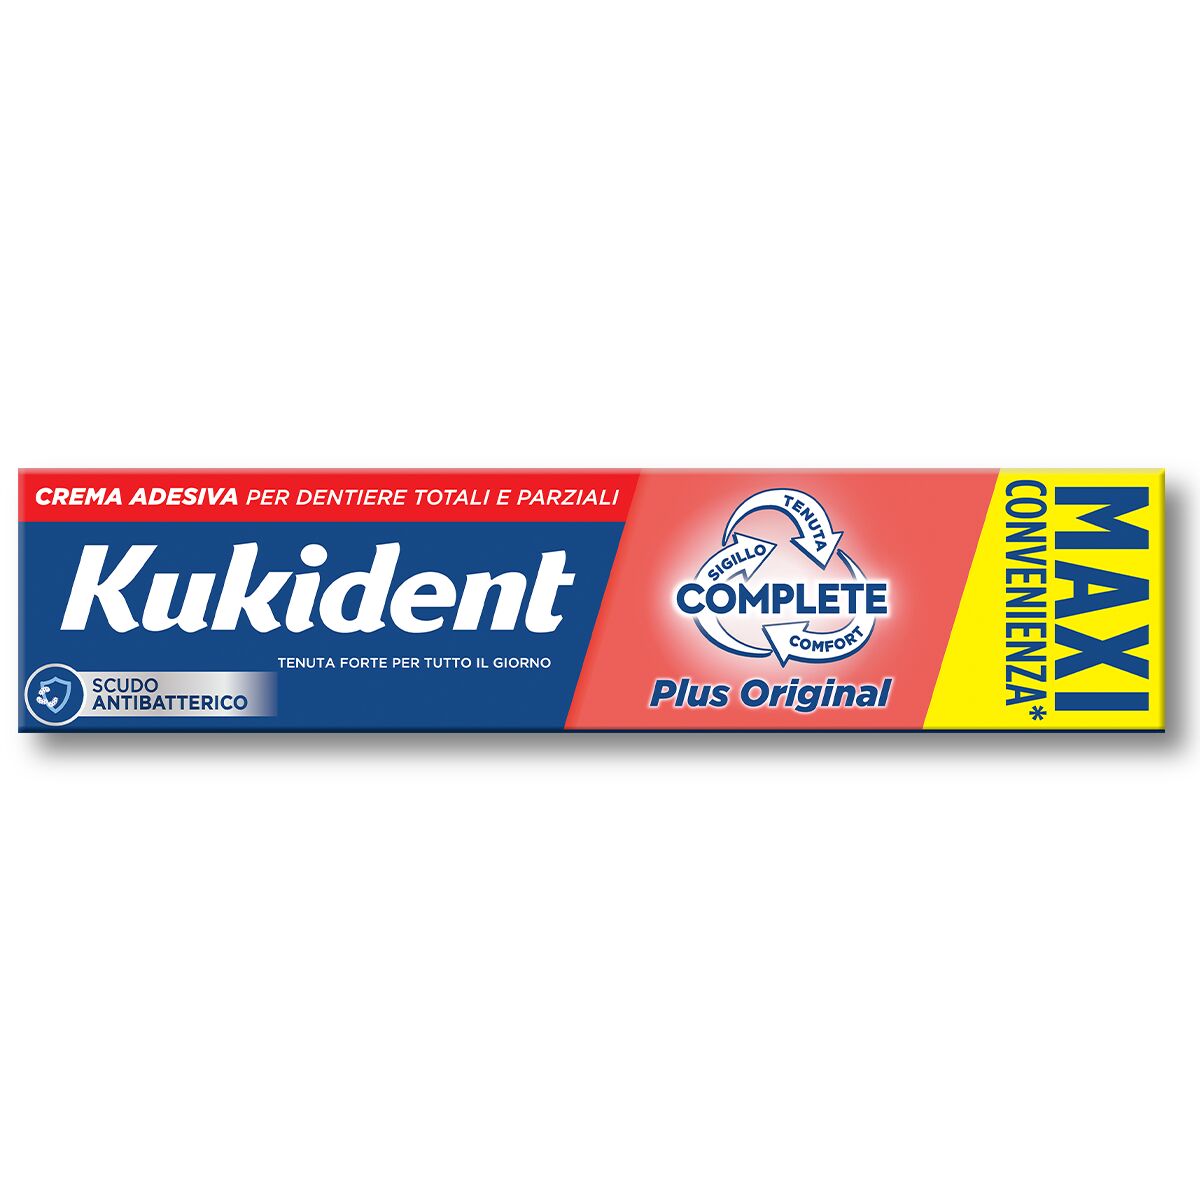 Kukident Complete Plus Original Crema Adesiva Per Dentiere Totali e Parziali Aroma Menta Leggera 65 g